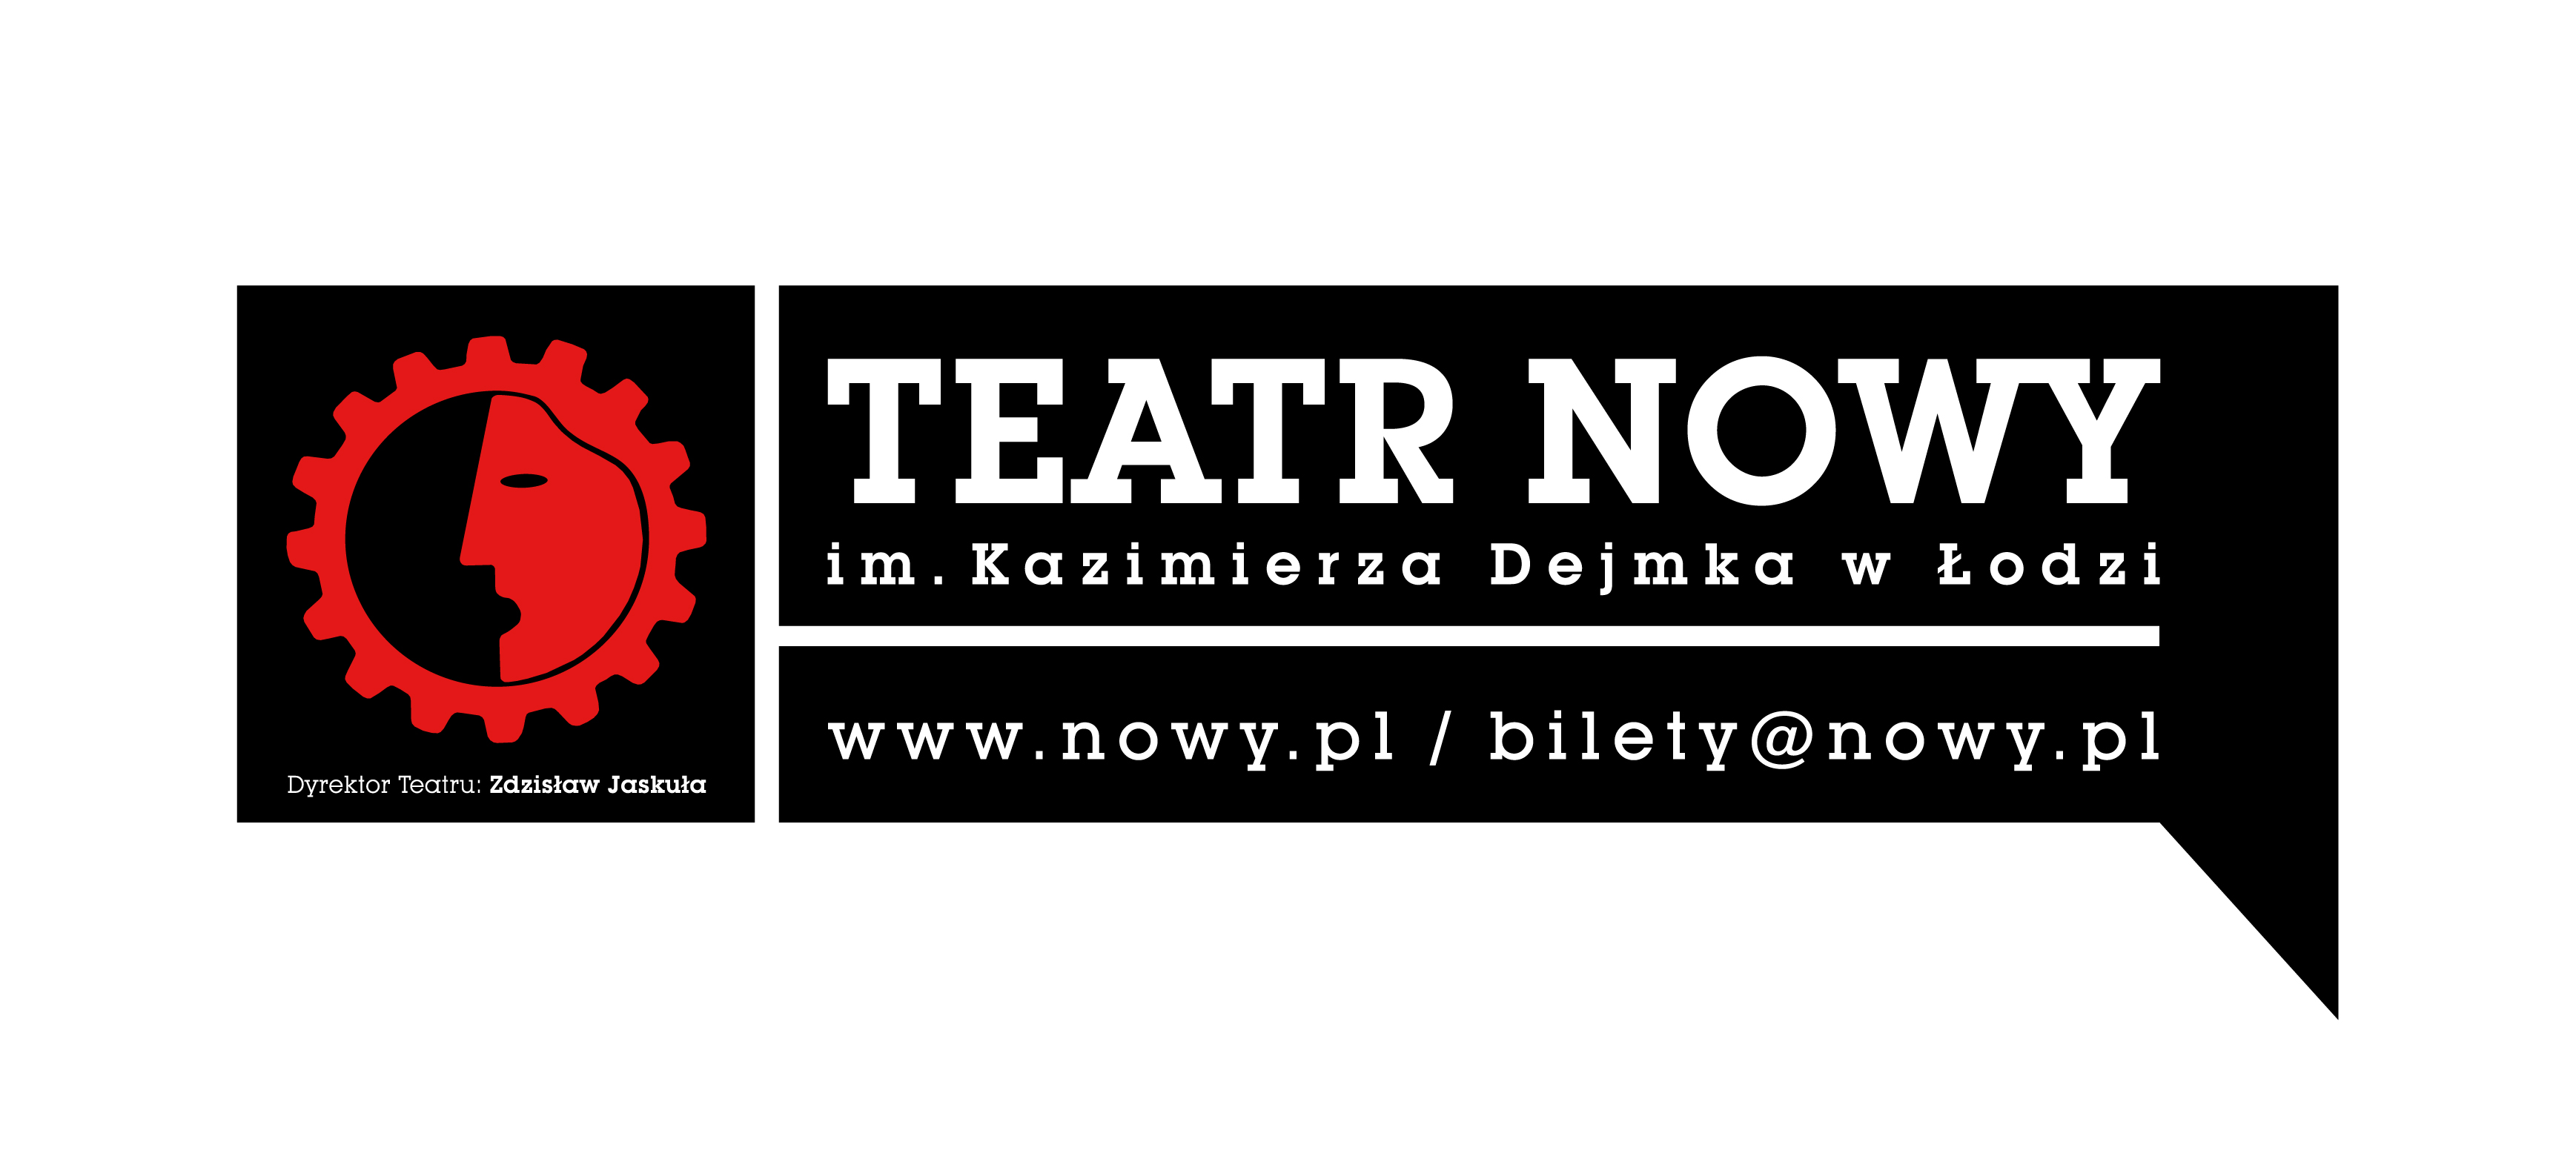 Teatr Nowy im. Kazimierza Dejmka w Łodzi, logo (źródło: materiały prasowe organizatora)